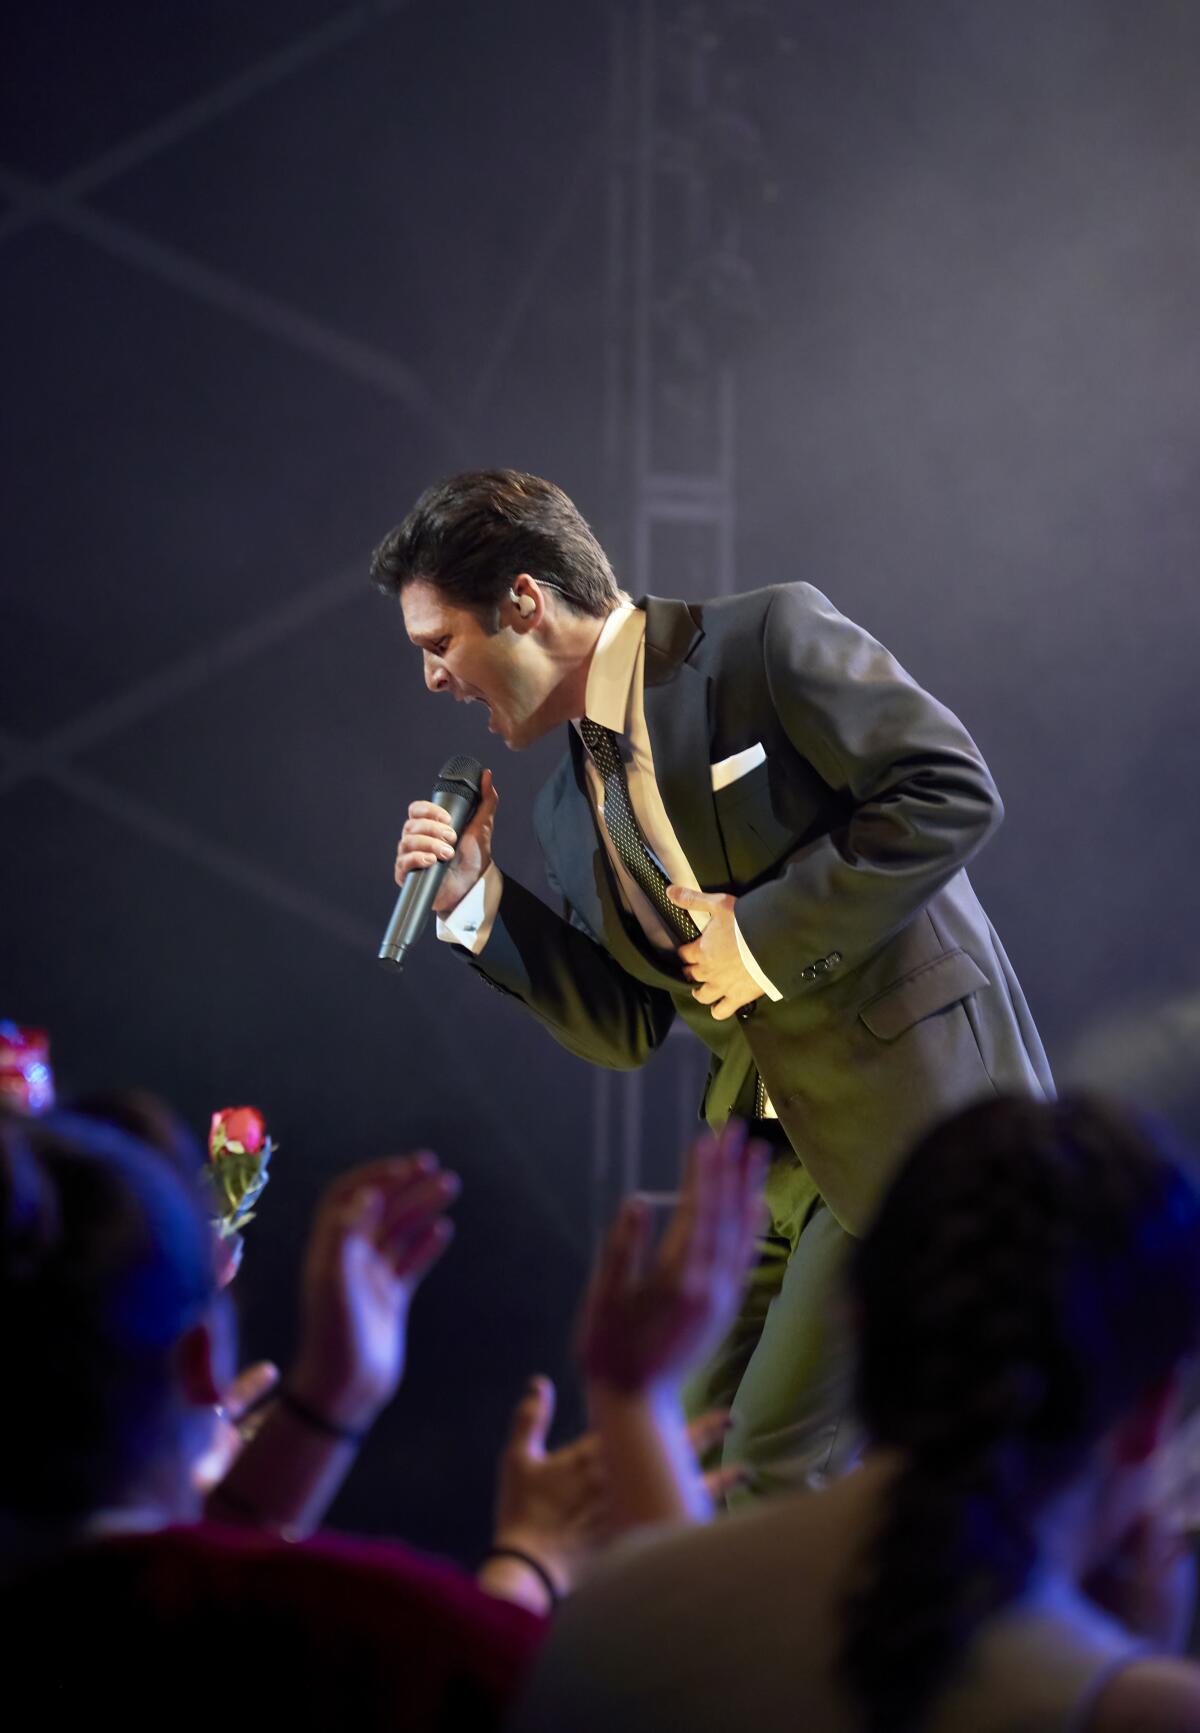 Un escena de Diego Boneta interpretando a Luis Miguel en el escenario.